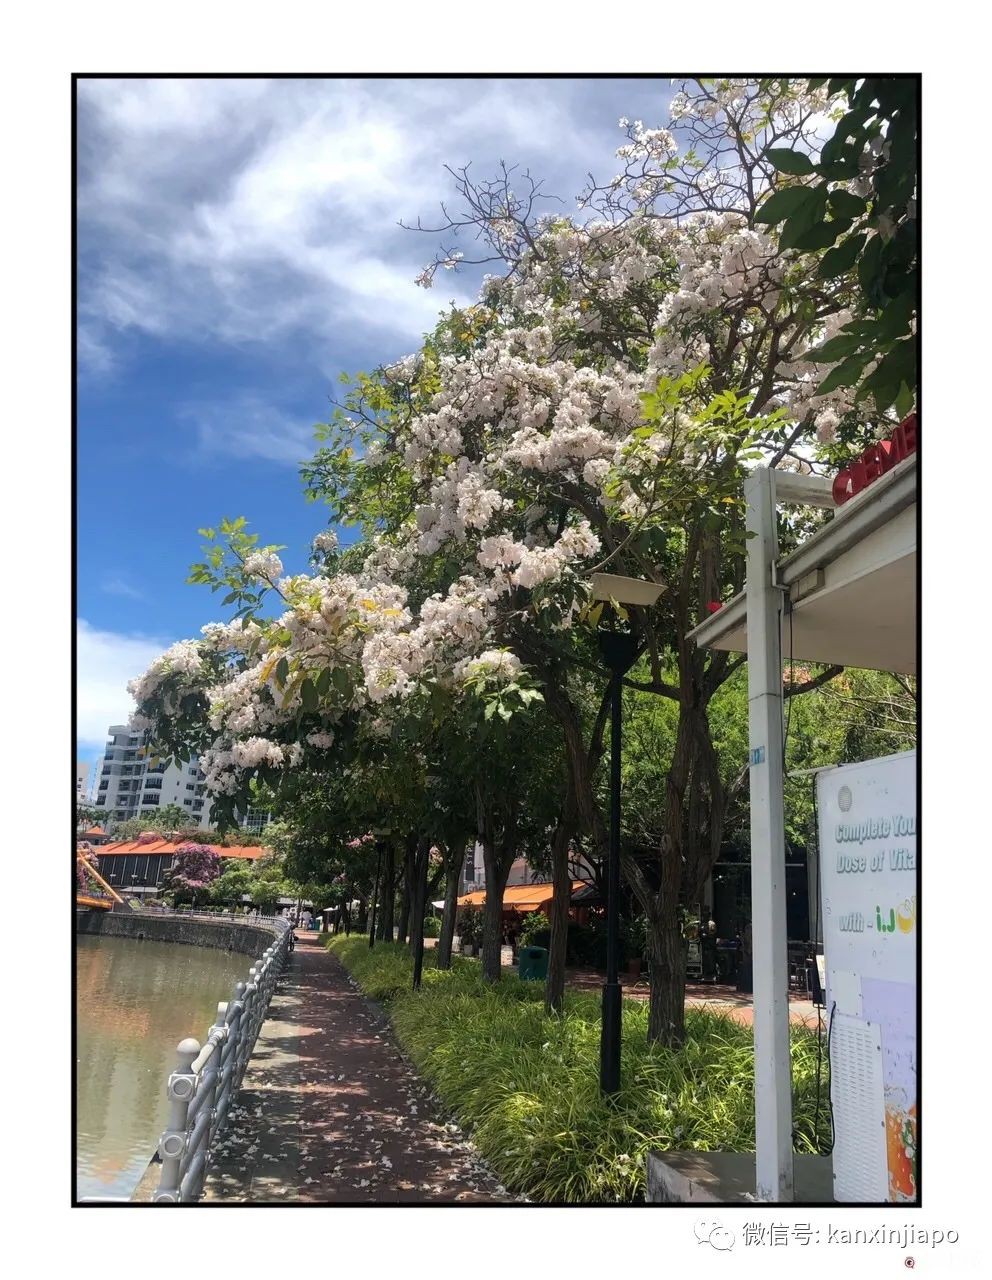 新加坡花季到，“櫻花”顔值仙氣爆表！